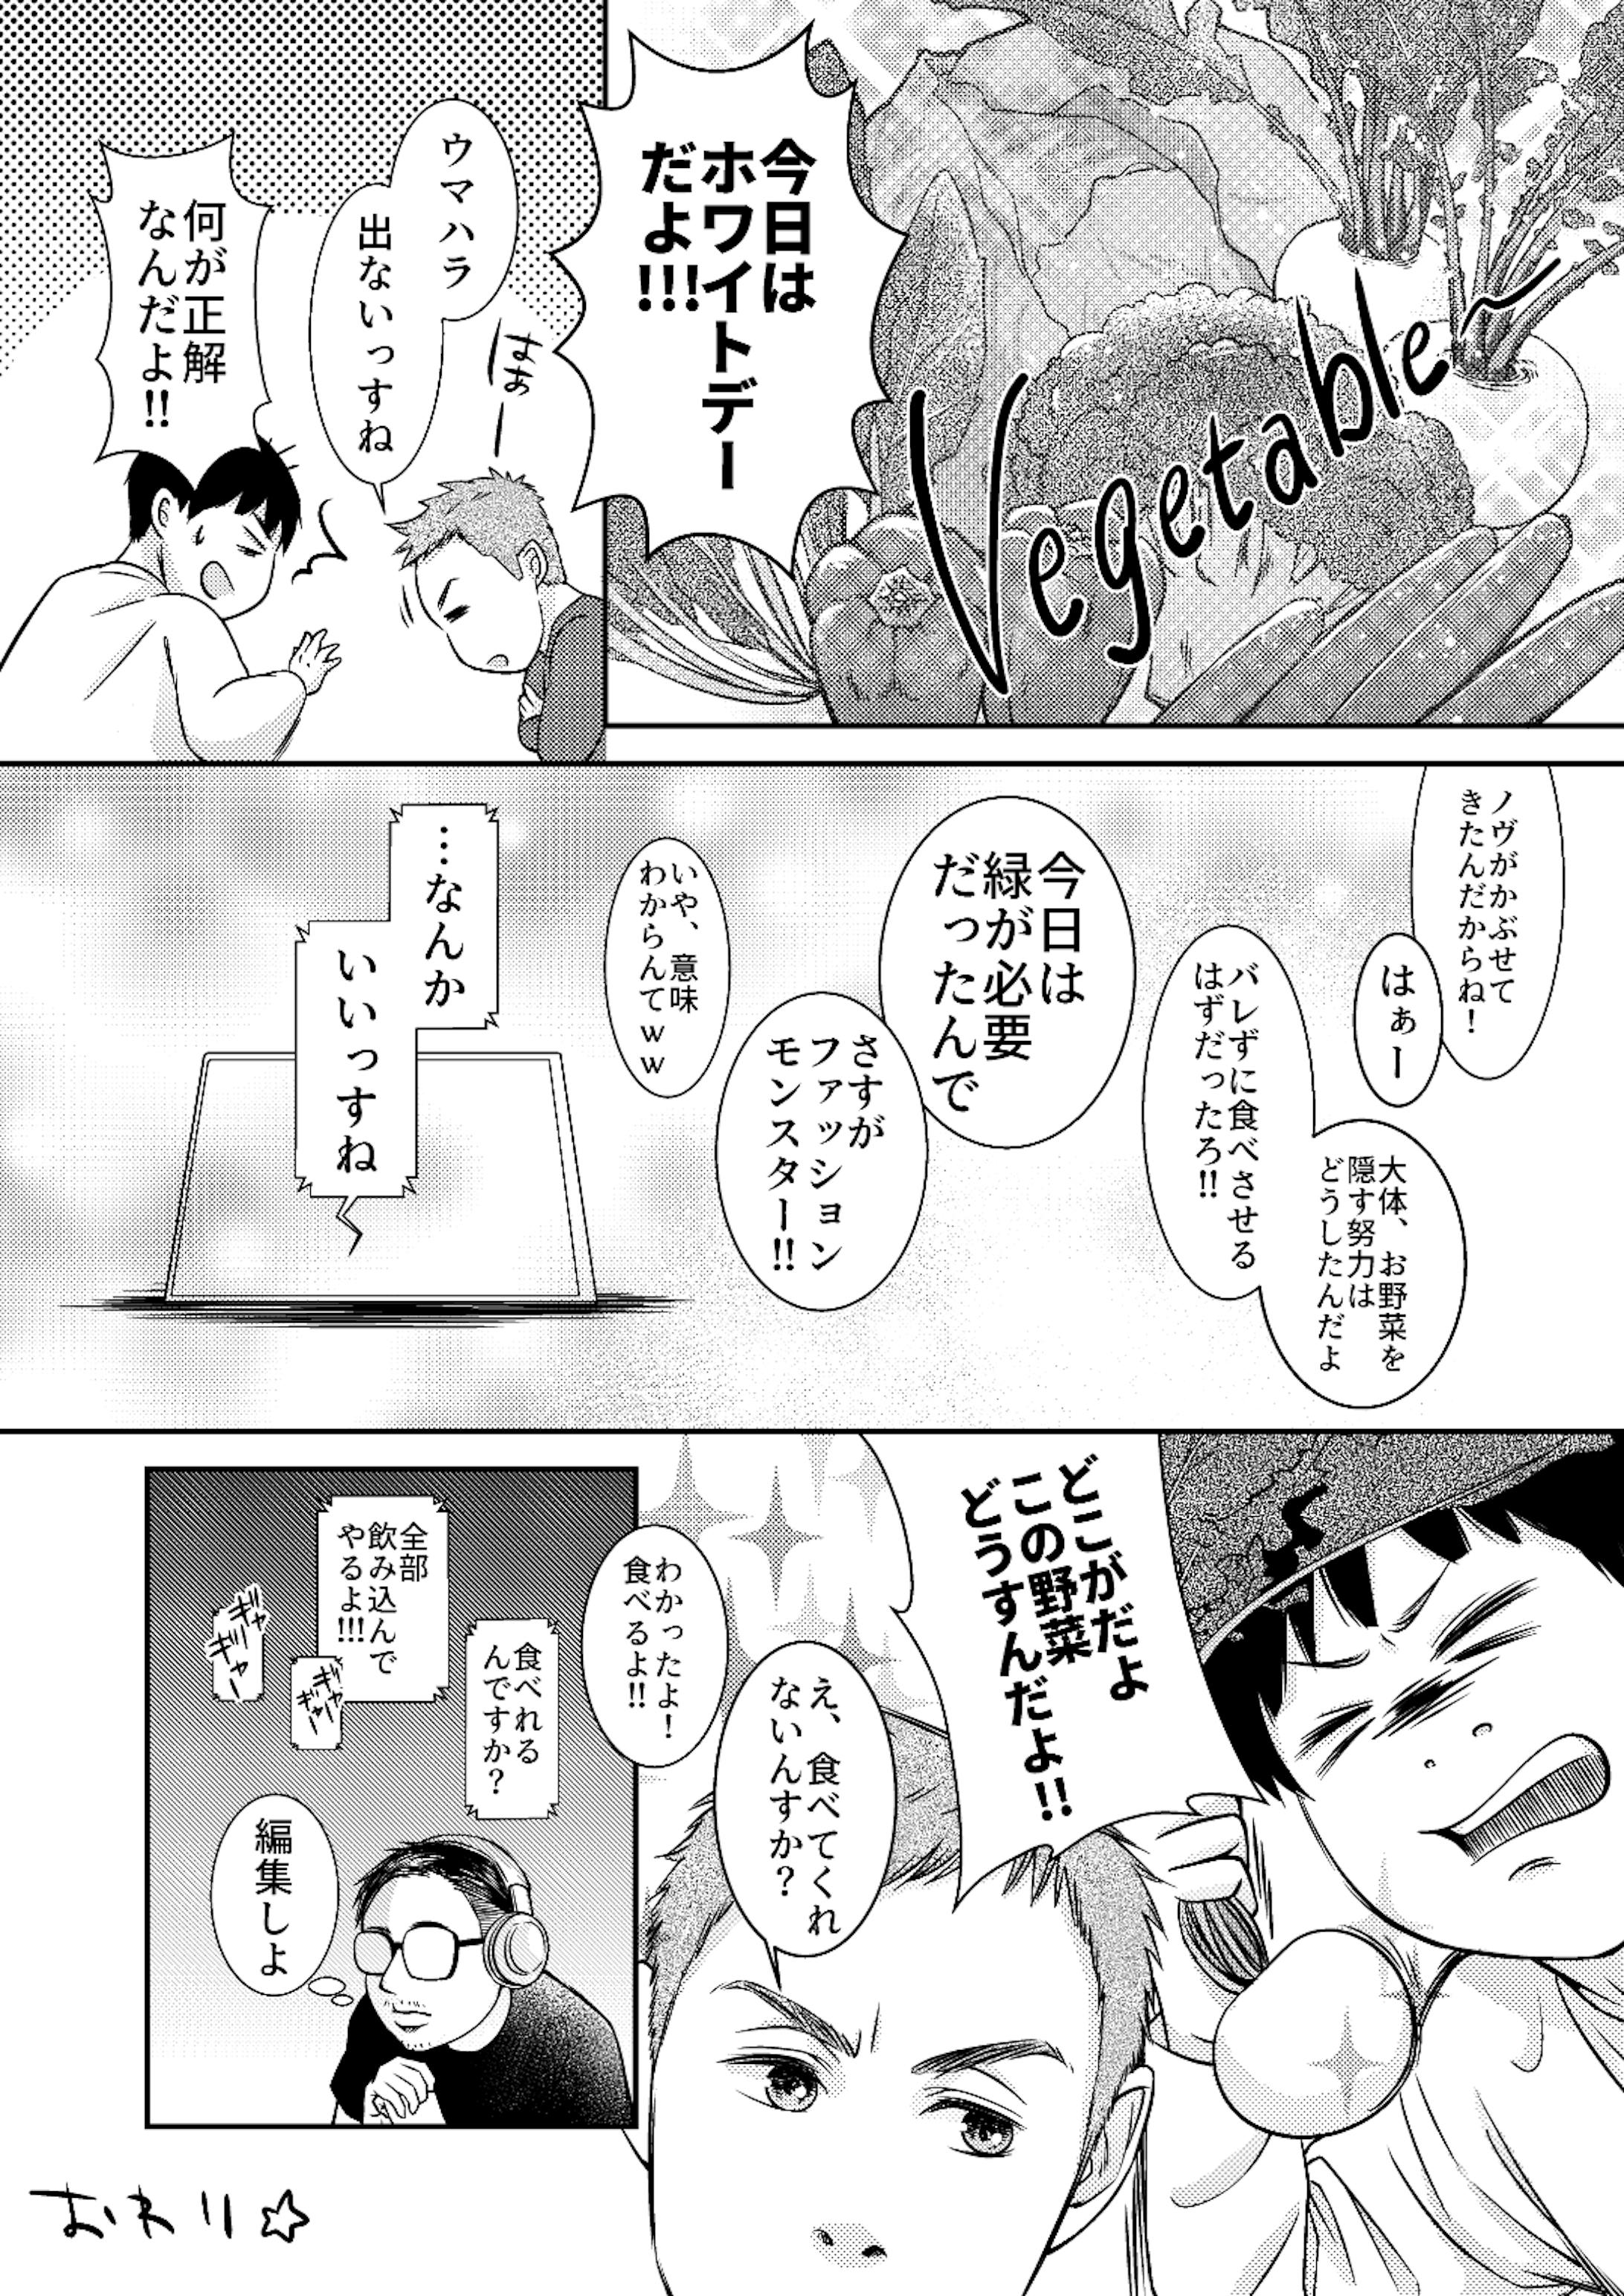 ナナフシギさんのファンアート漫画02-4